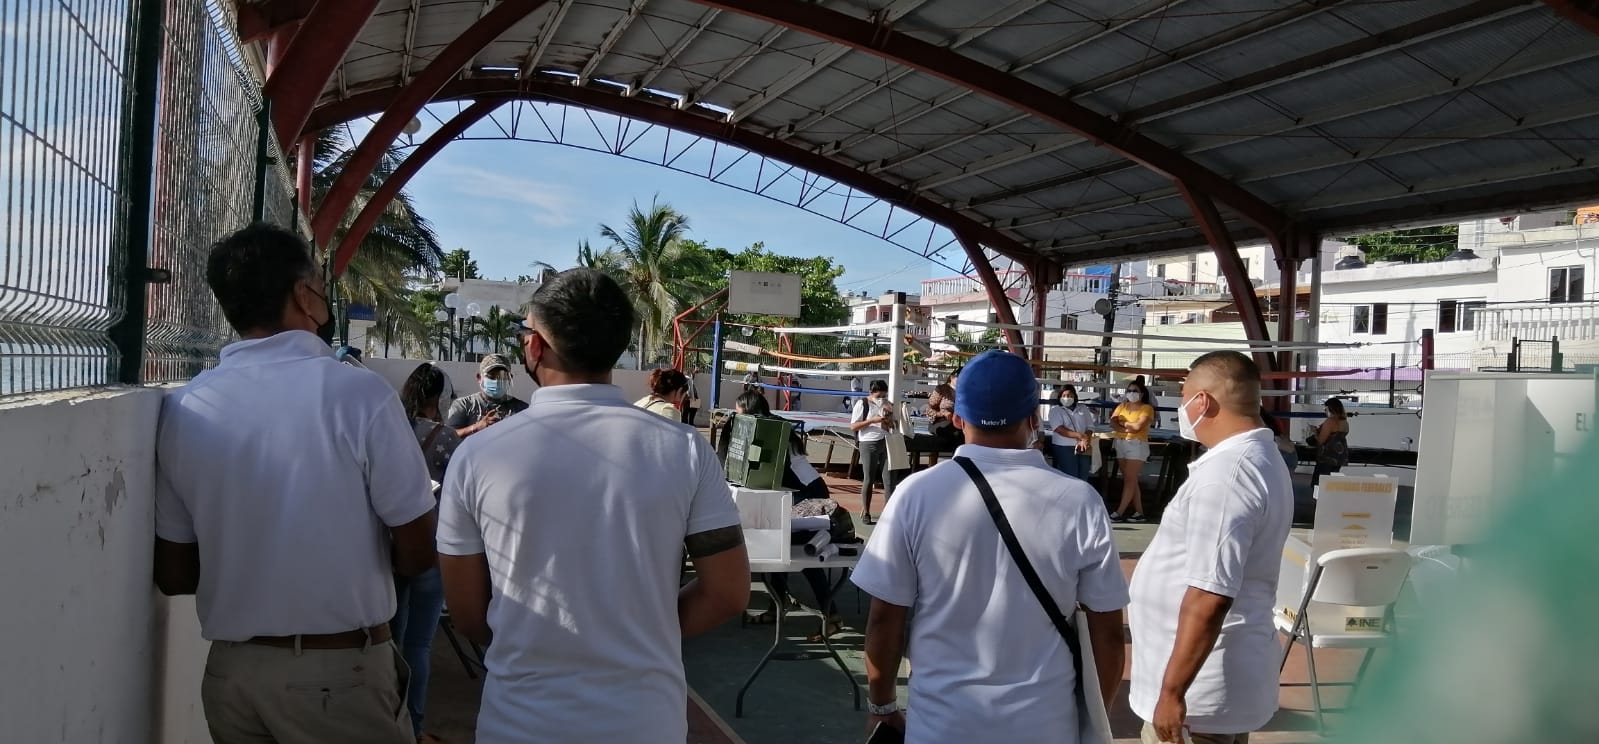 Más de 35 casillas en Isla Mujeres sin concluir instalación